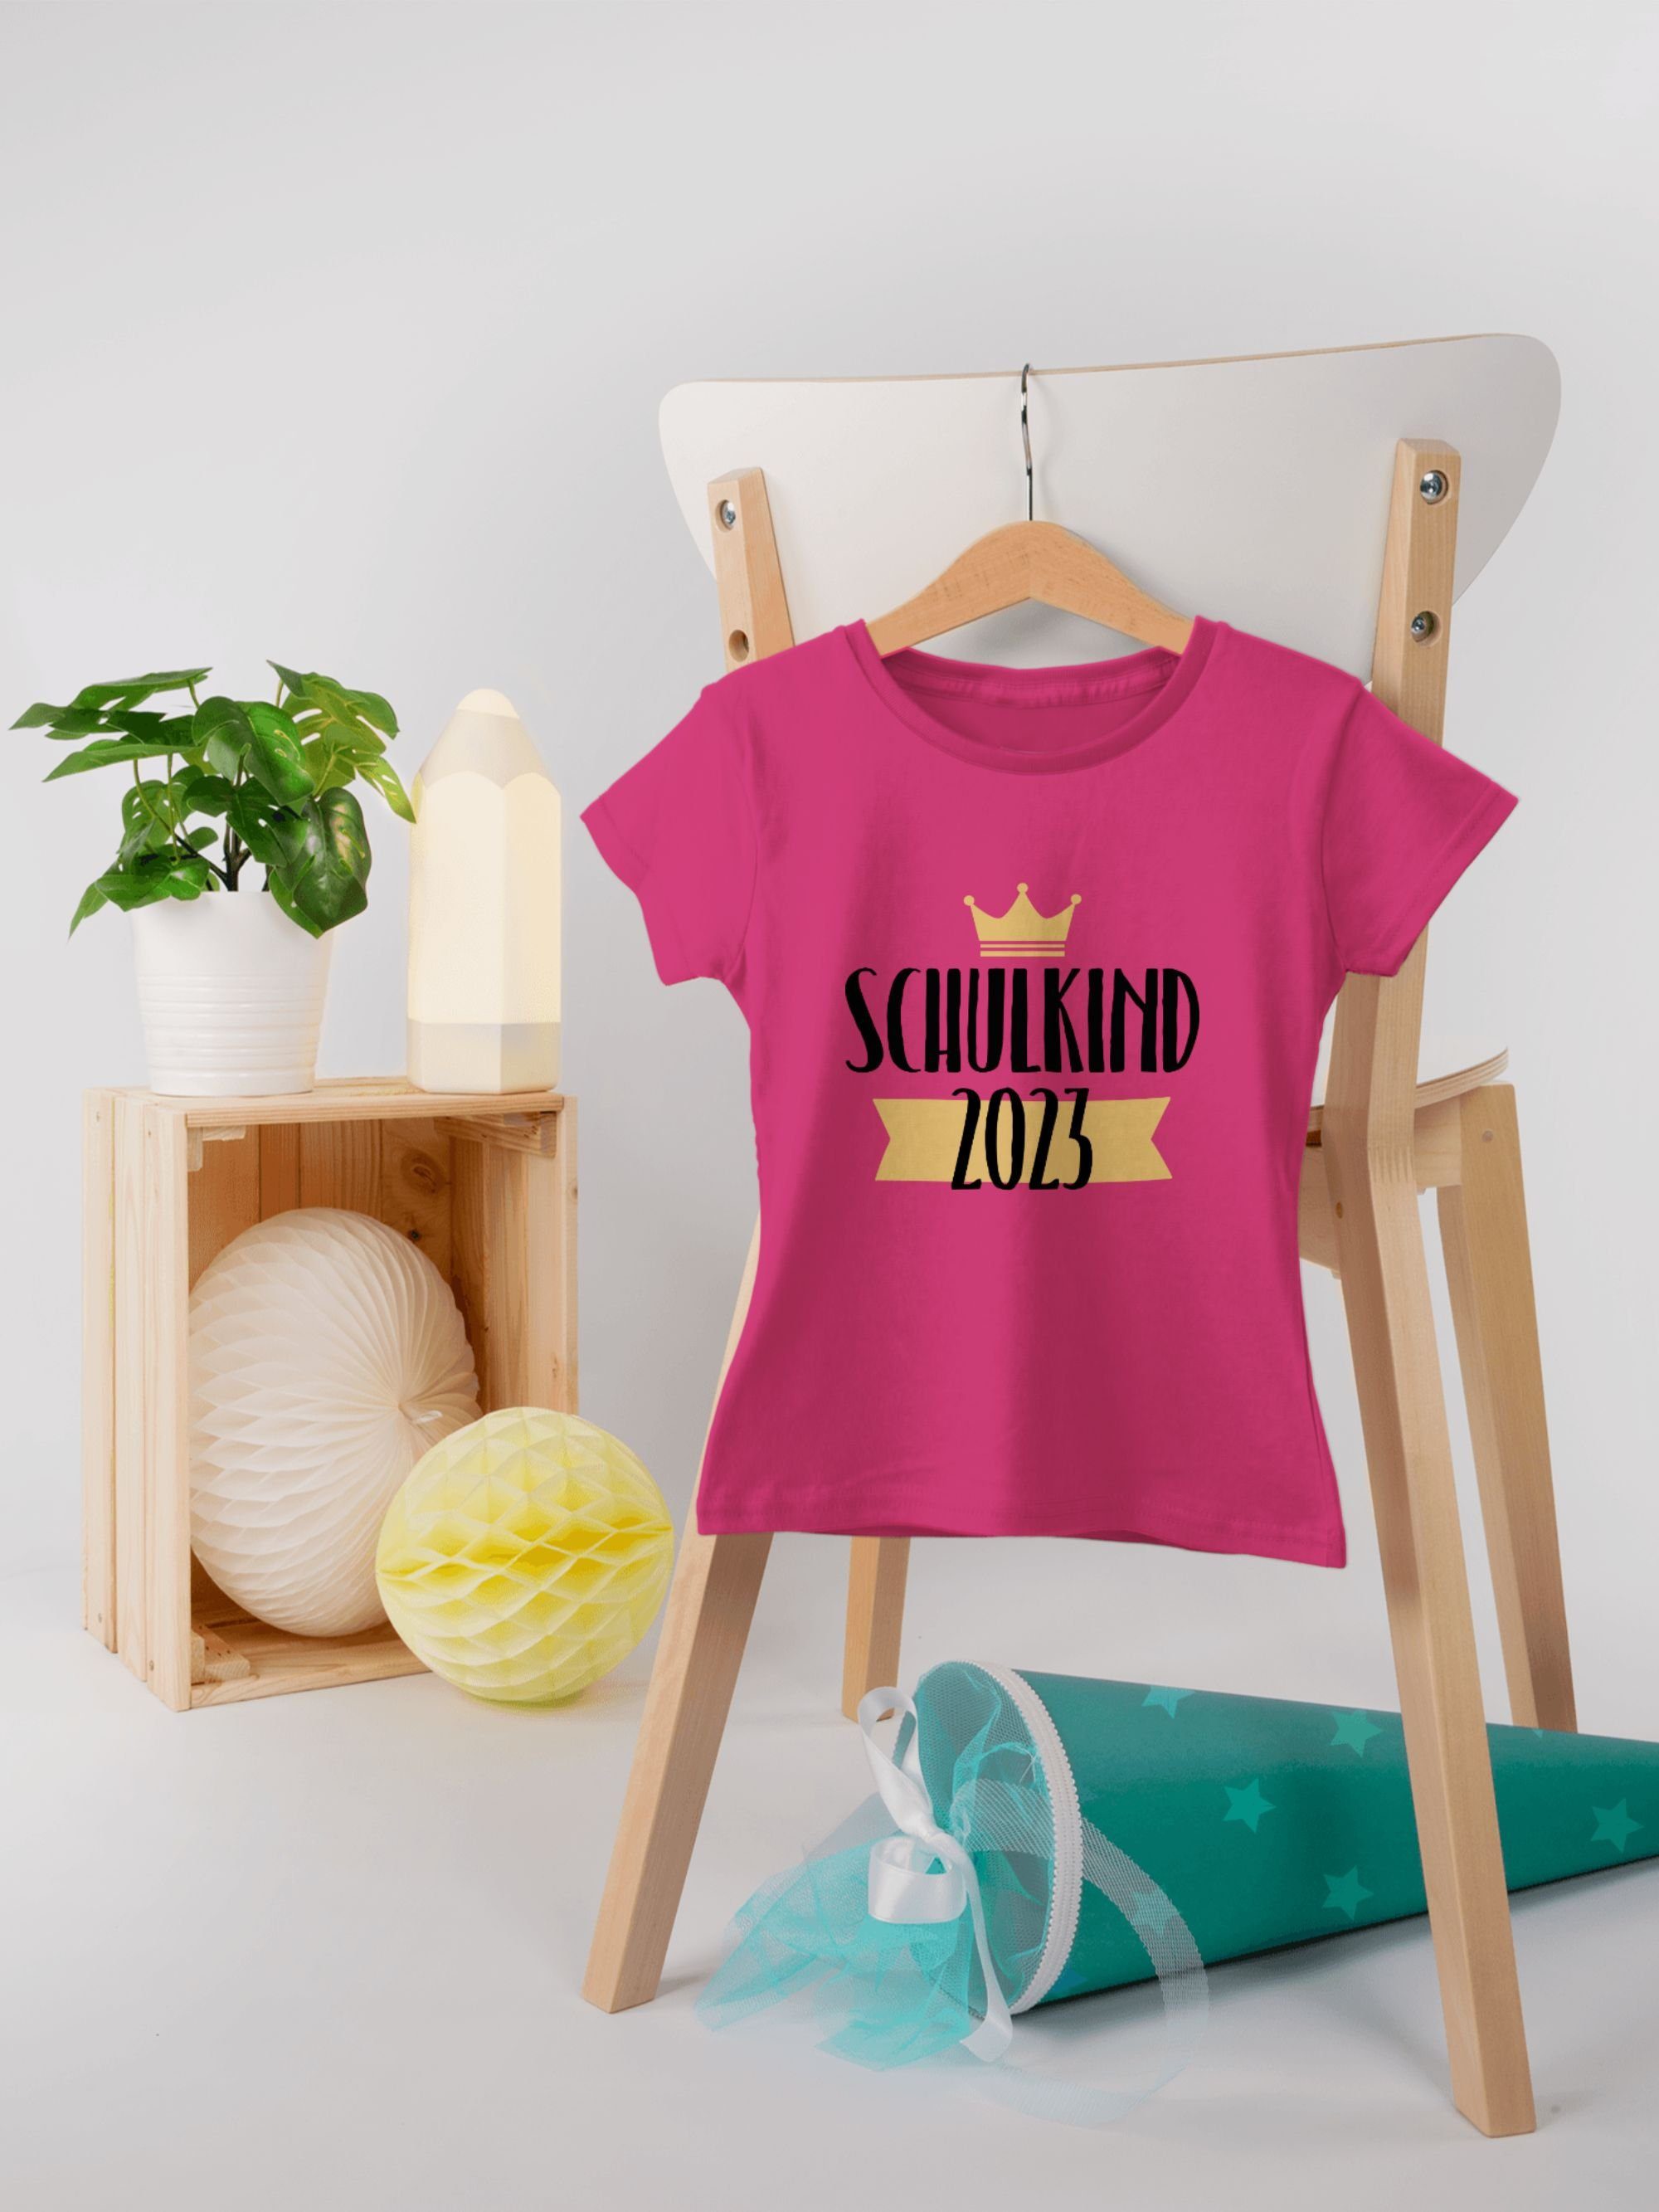 Shirtracer T-Shirt Schulkind 2023 mit Mädchen Fuchsia 1 Einschulung Krone